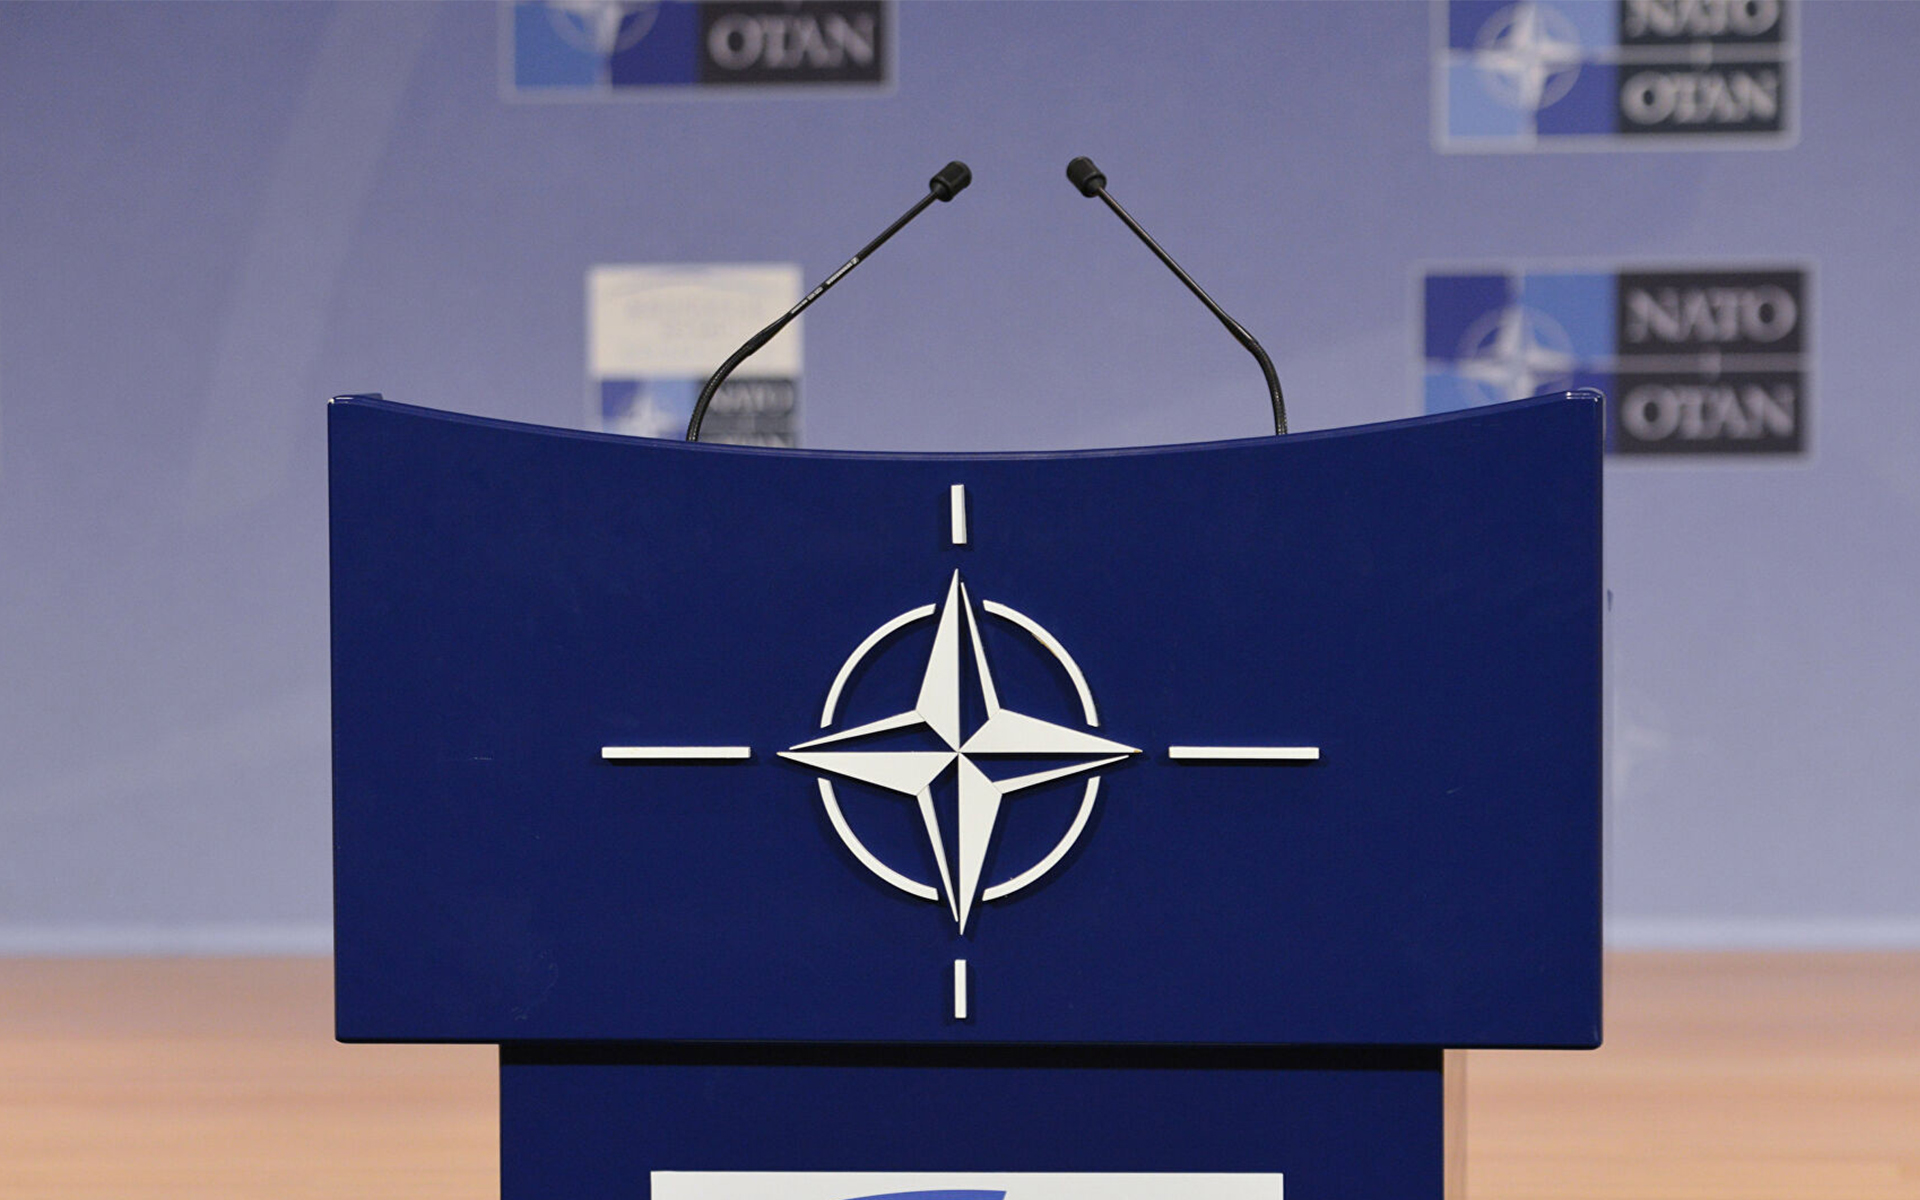 НАТО на пути в 2030 г. – модернизация политического диалога